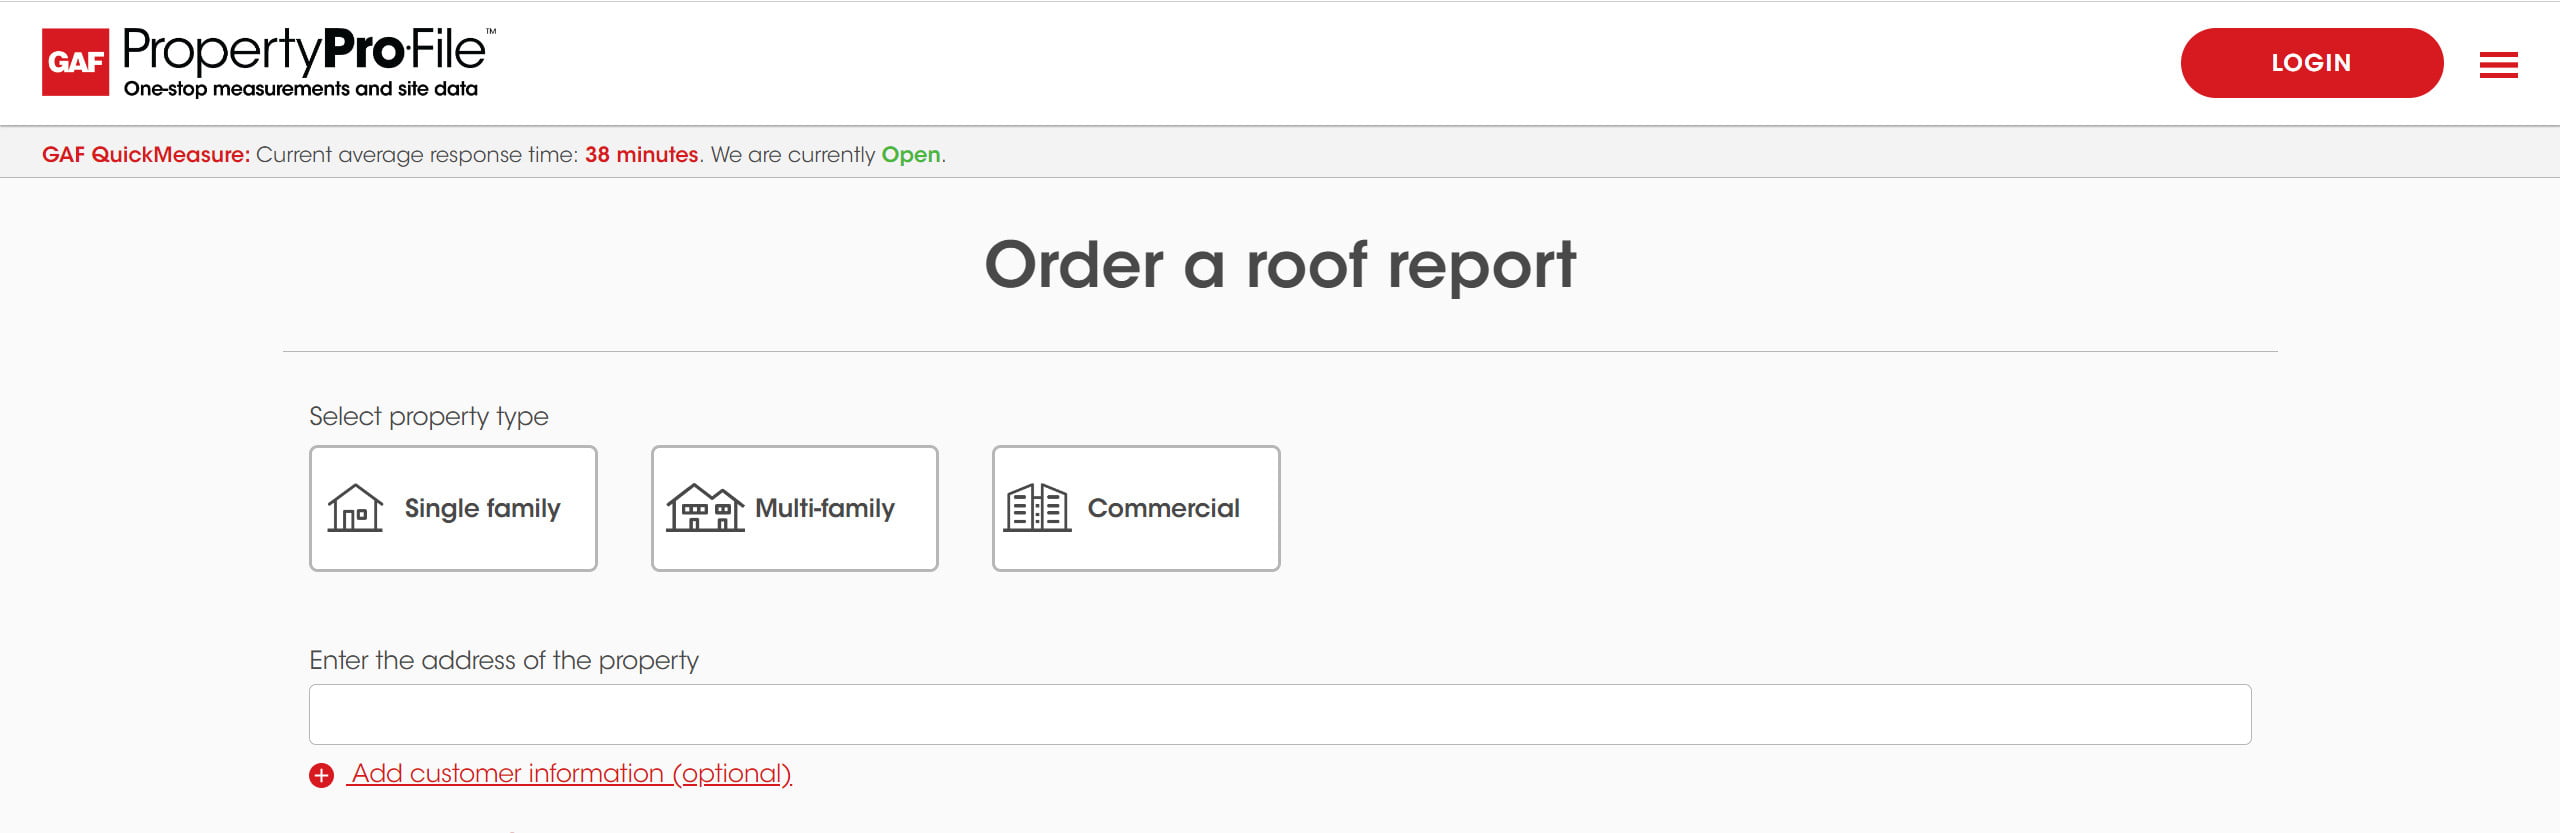 ROOFLINK Roofing Sales CRM GAF Quick Measure Integration